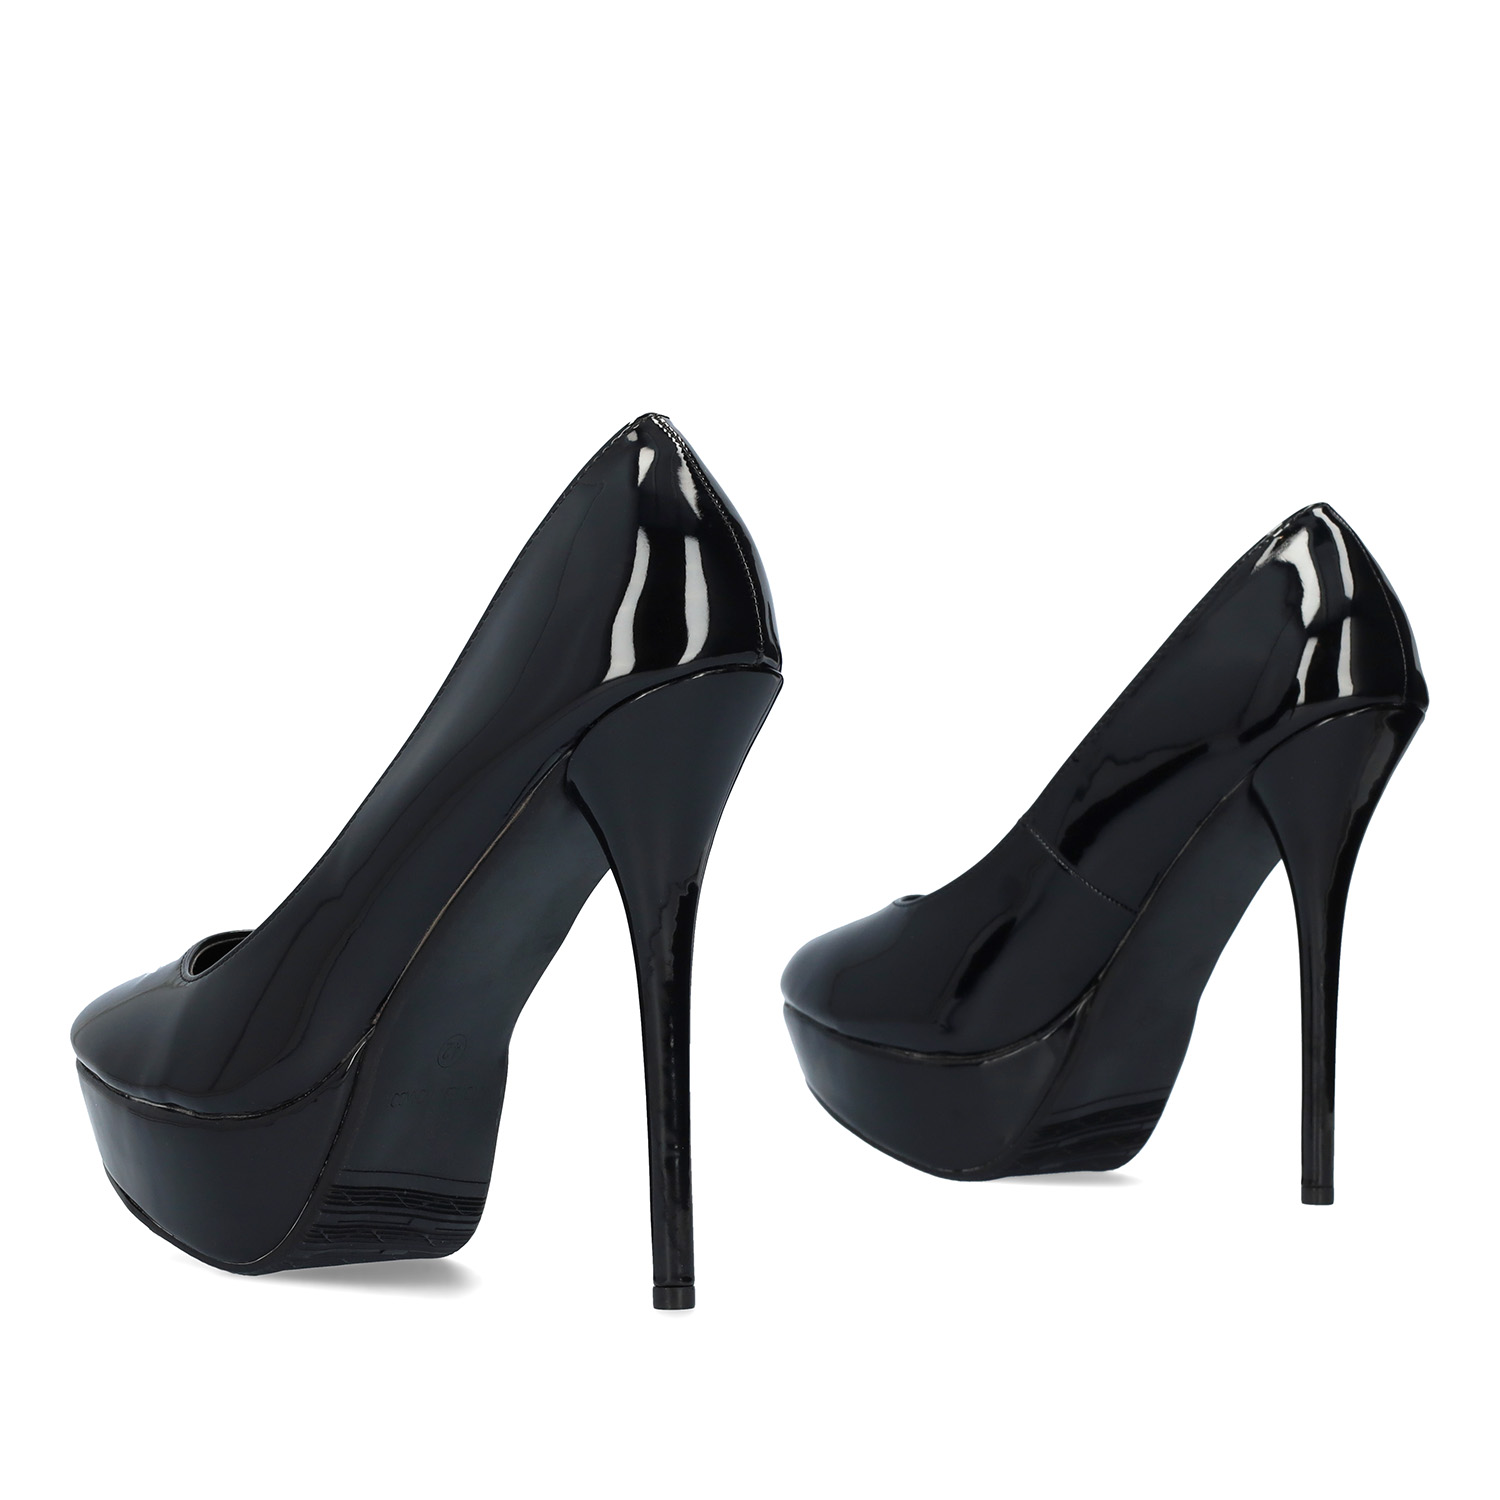 Schwarze Lack High heels. 14 cm Absatz 